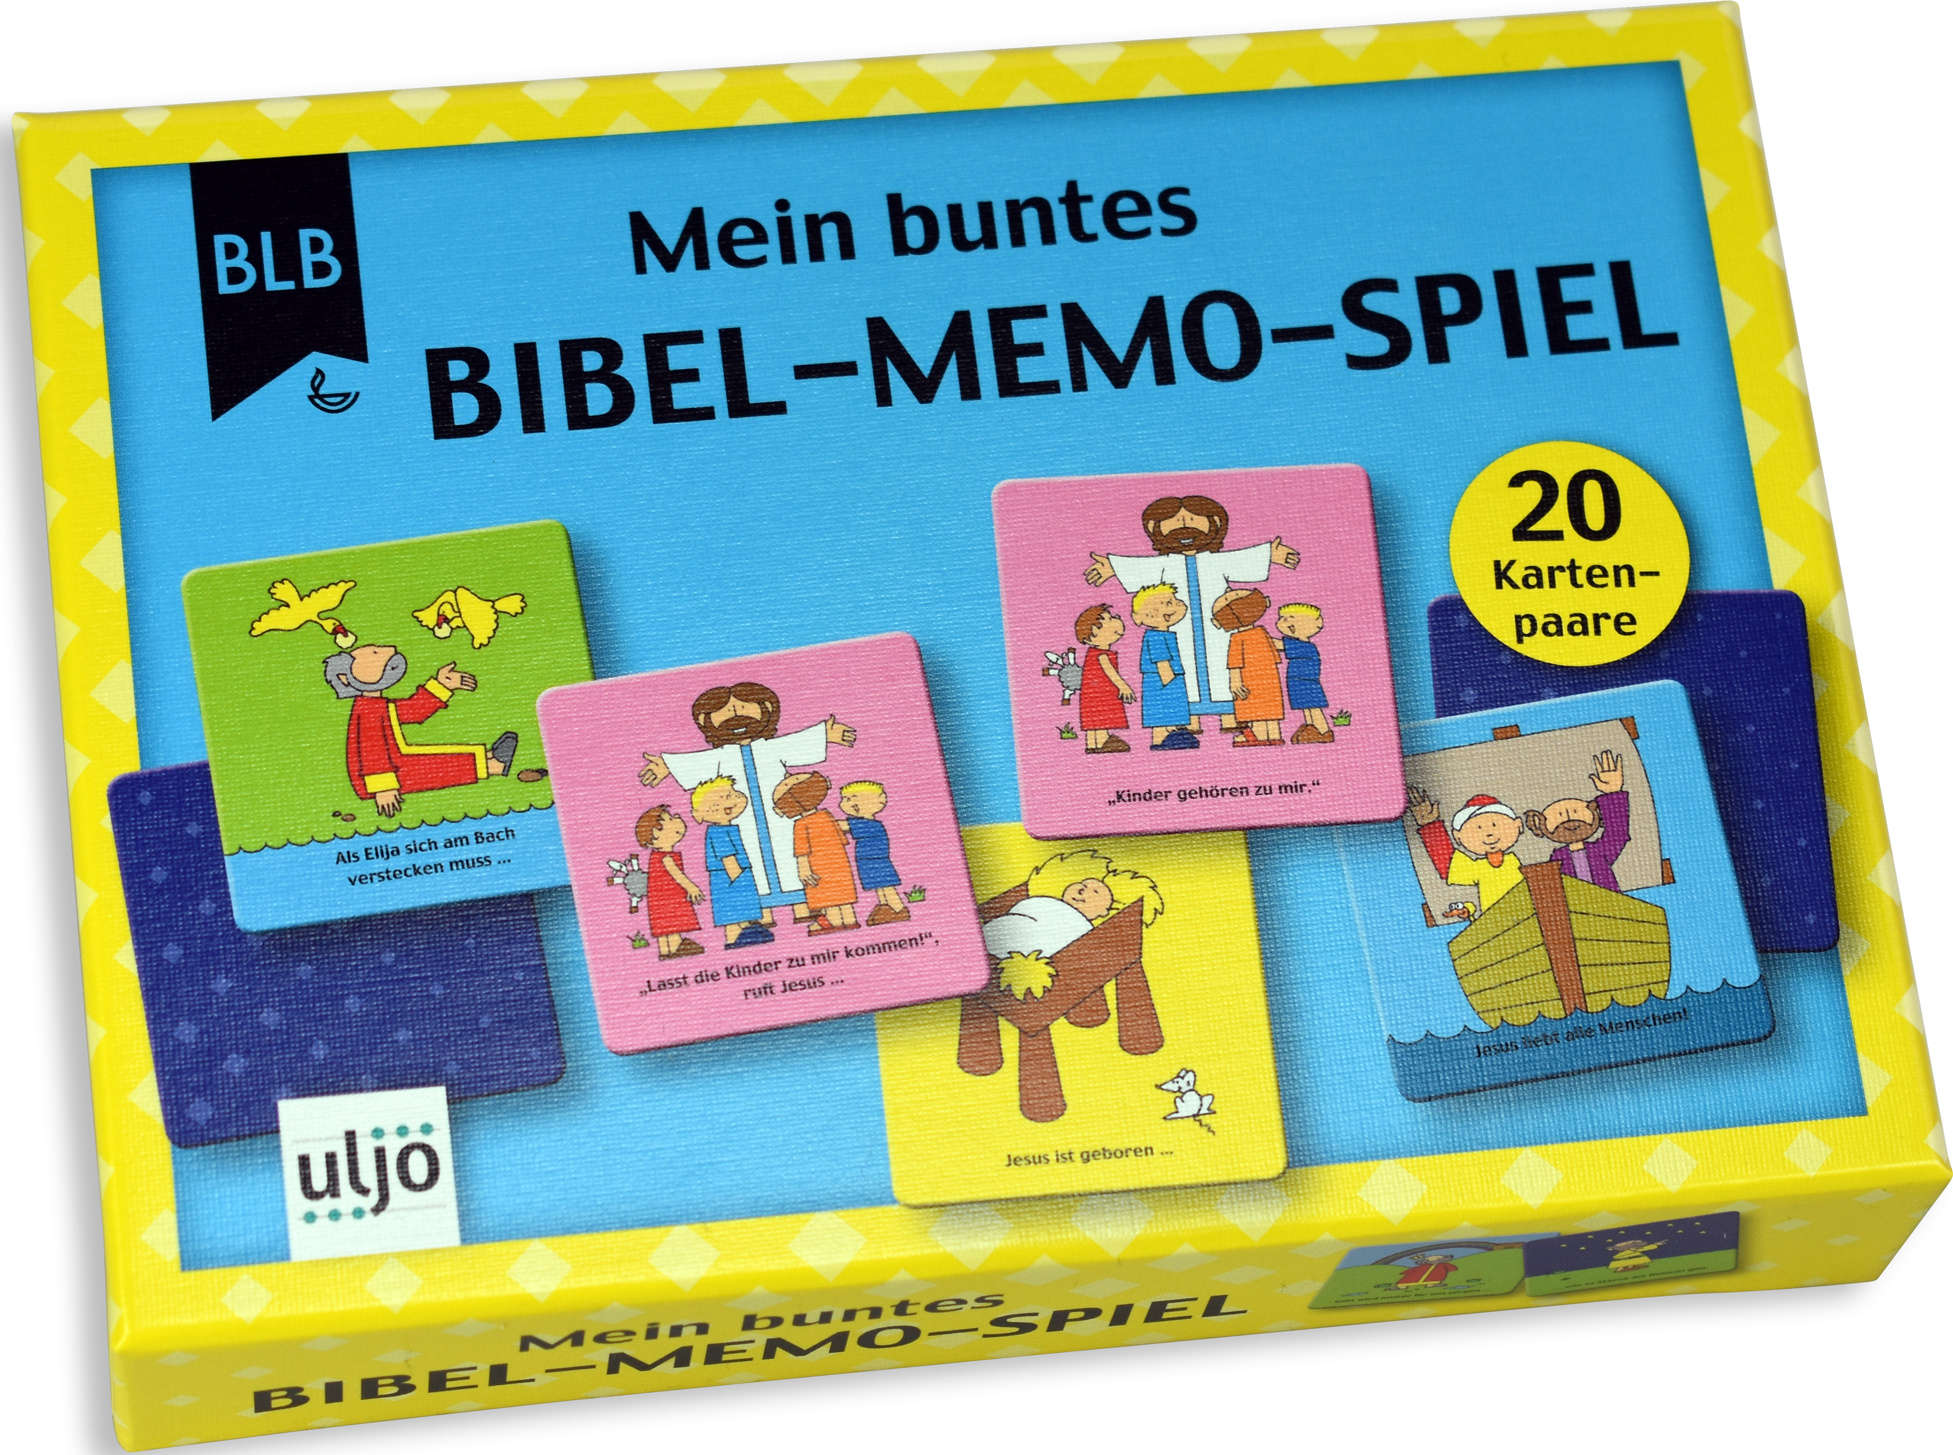 Mein buntes Bibel-Memo-Spiel